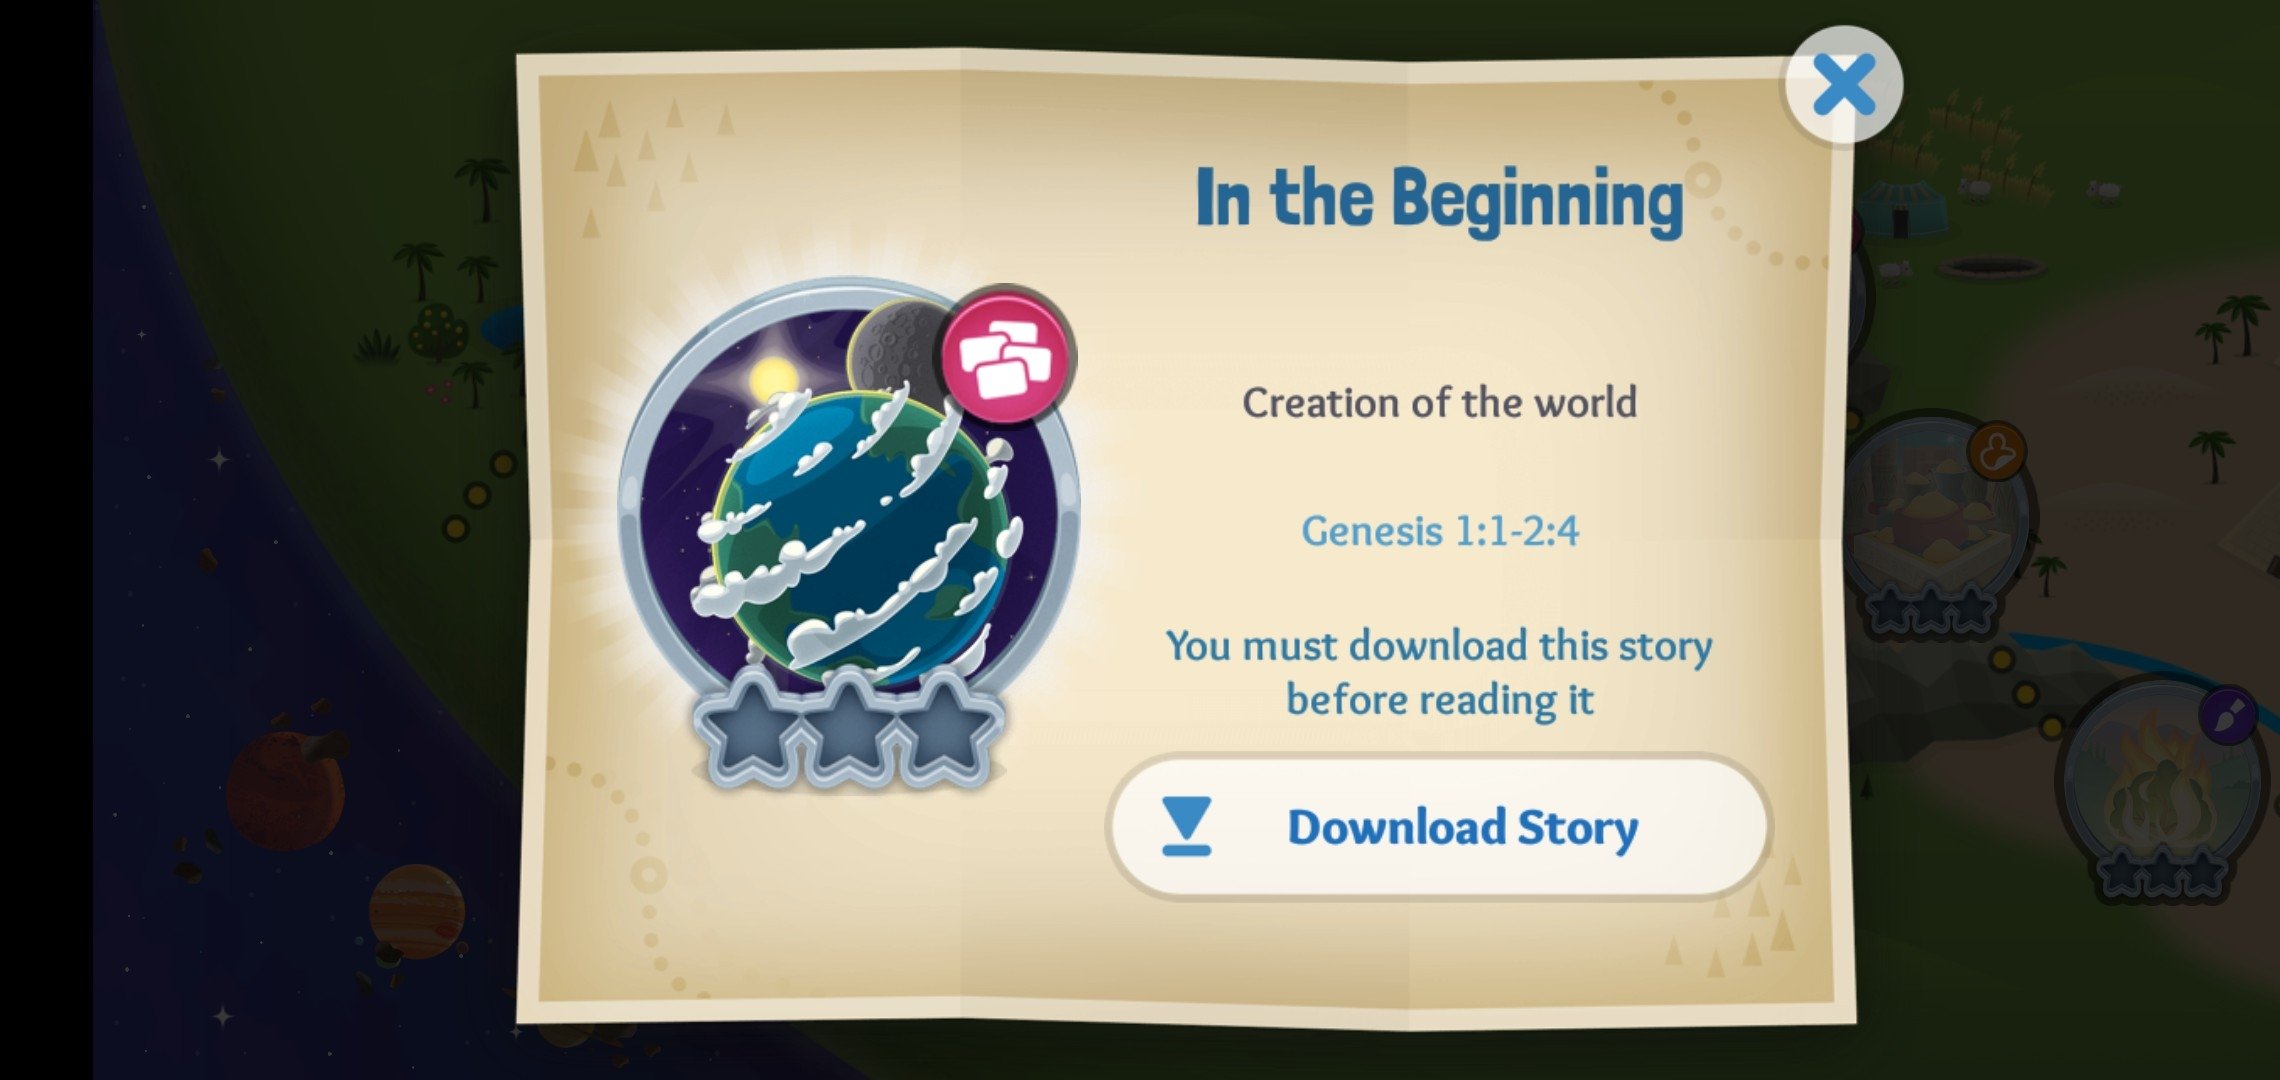 Biblia App para Niños - Aplicaciones en Google Play